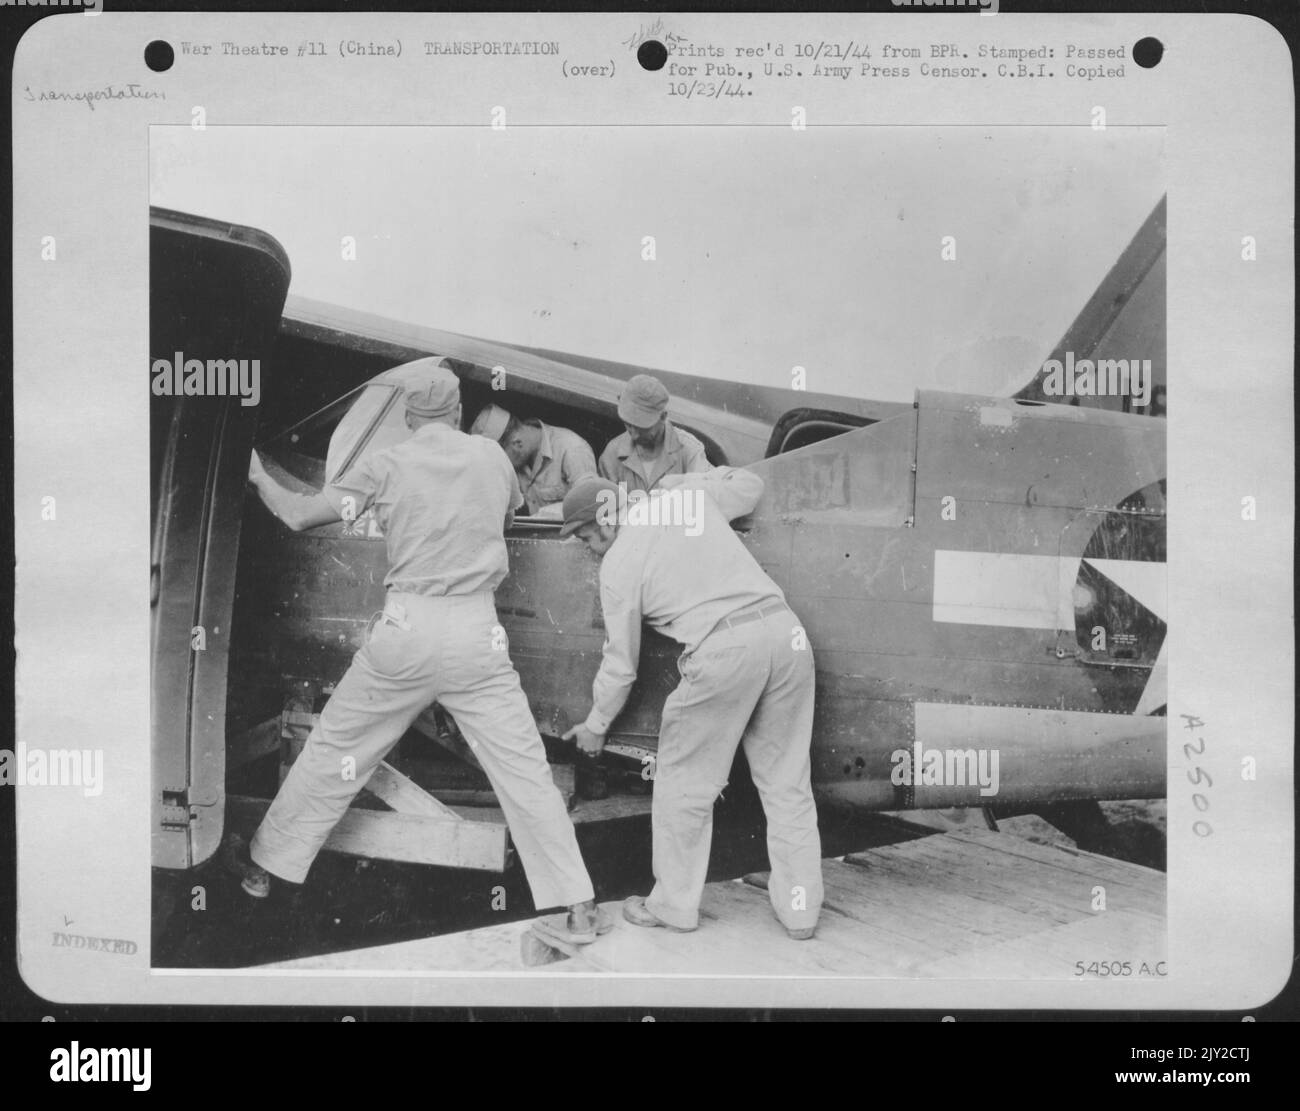 Un avion à l'intérieur d'un autre avion, ou de gros poissons mange peu de poisson, un fuselage de chasse P-40 Curtiss étant déchargé du gros ventre d'un navire de cargaison C-47 de Douglas dans une base aérienne américaine en avant en Chine. Banque D'Images